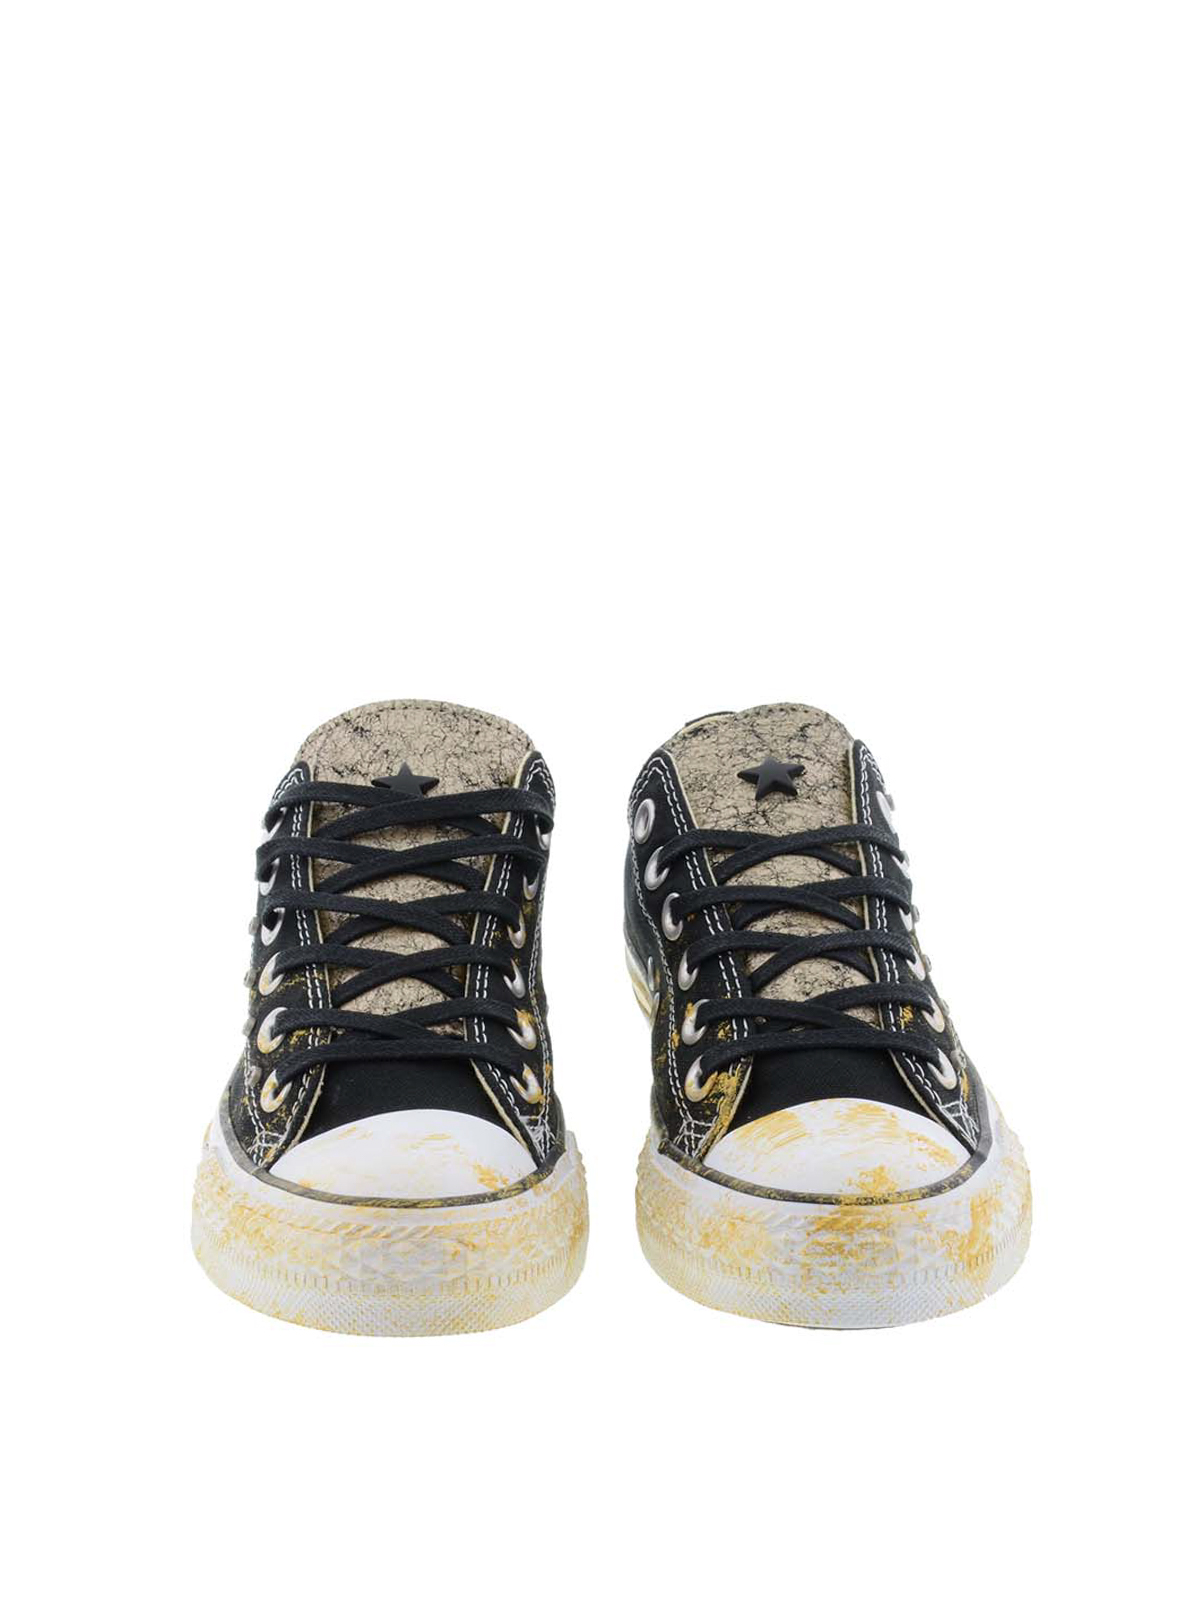 Aparte Pulido Todo tipo de Zapatillas Converse Limited Edition - Limited Edition sneakers -  1C15SU07GOLD